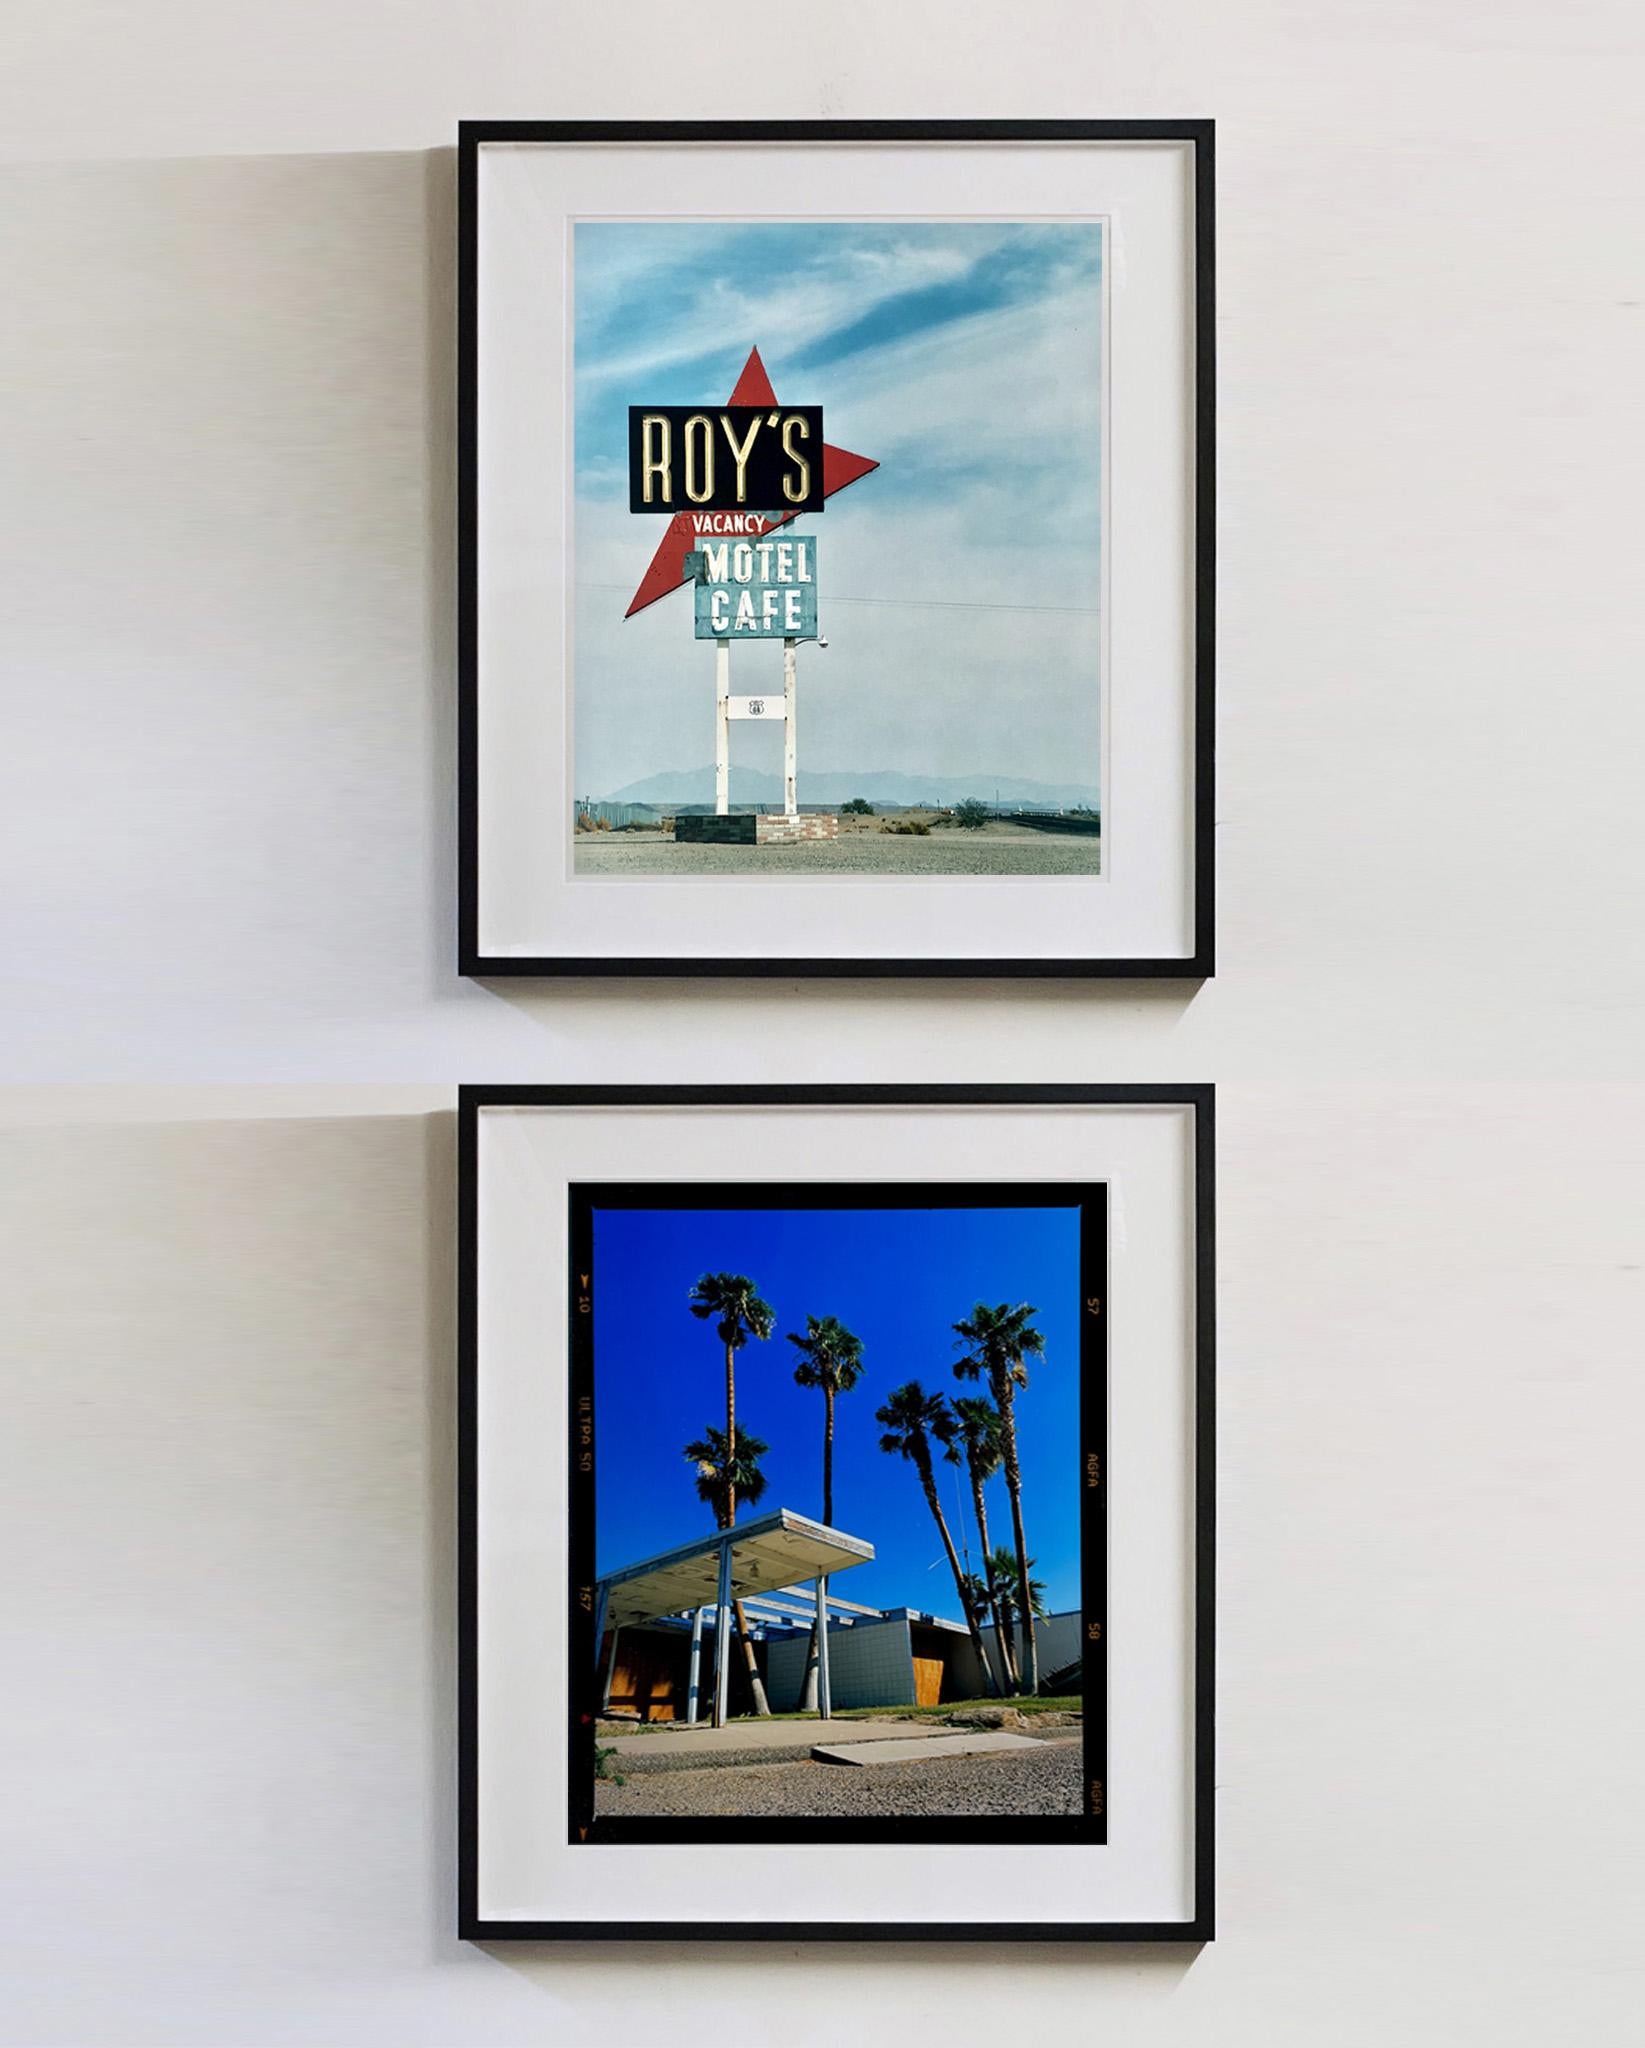 Das ikonische Roy's Motel-Schild an der berühmten Route 66, die die Kulisse für einige der besten amerikanischen Roadtrips bildet. Das Foto von Richard Heeps gehört zu seiner Serie Dream in Colour und ist eines seiner vielen Fotos von